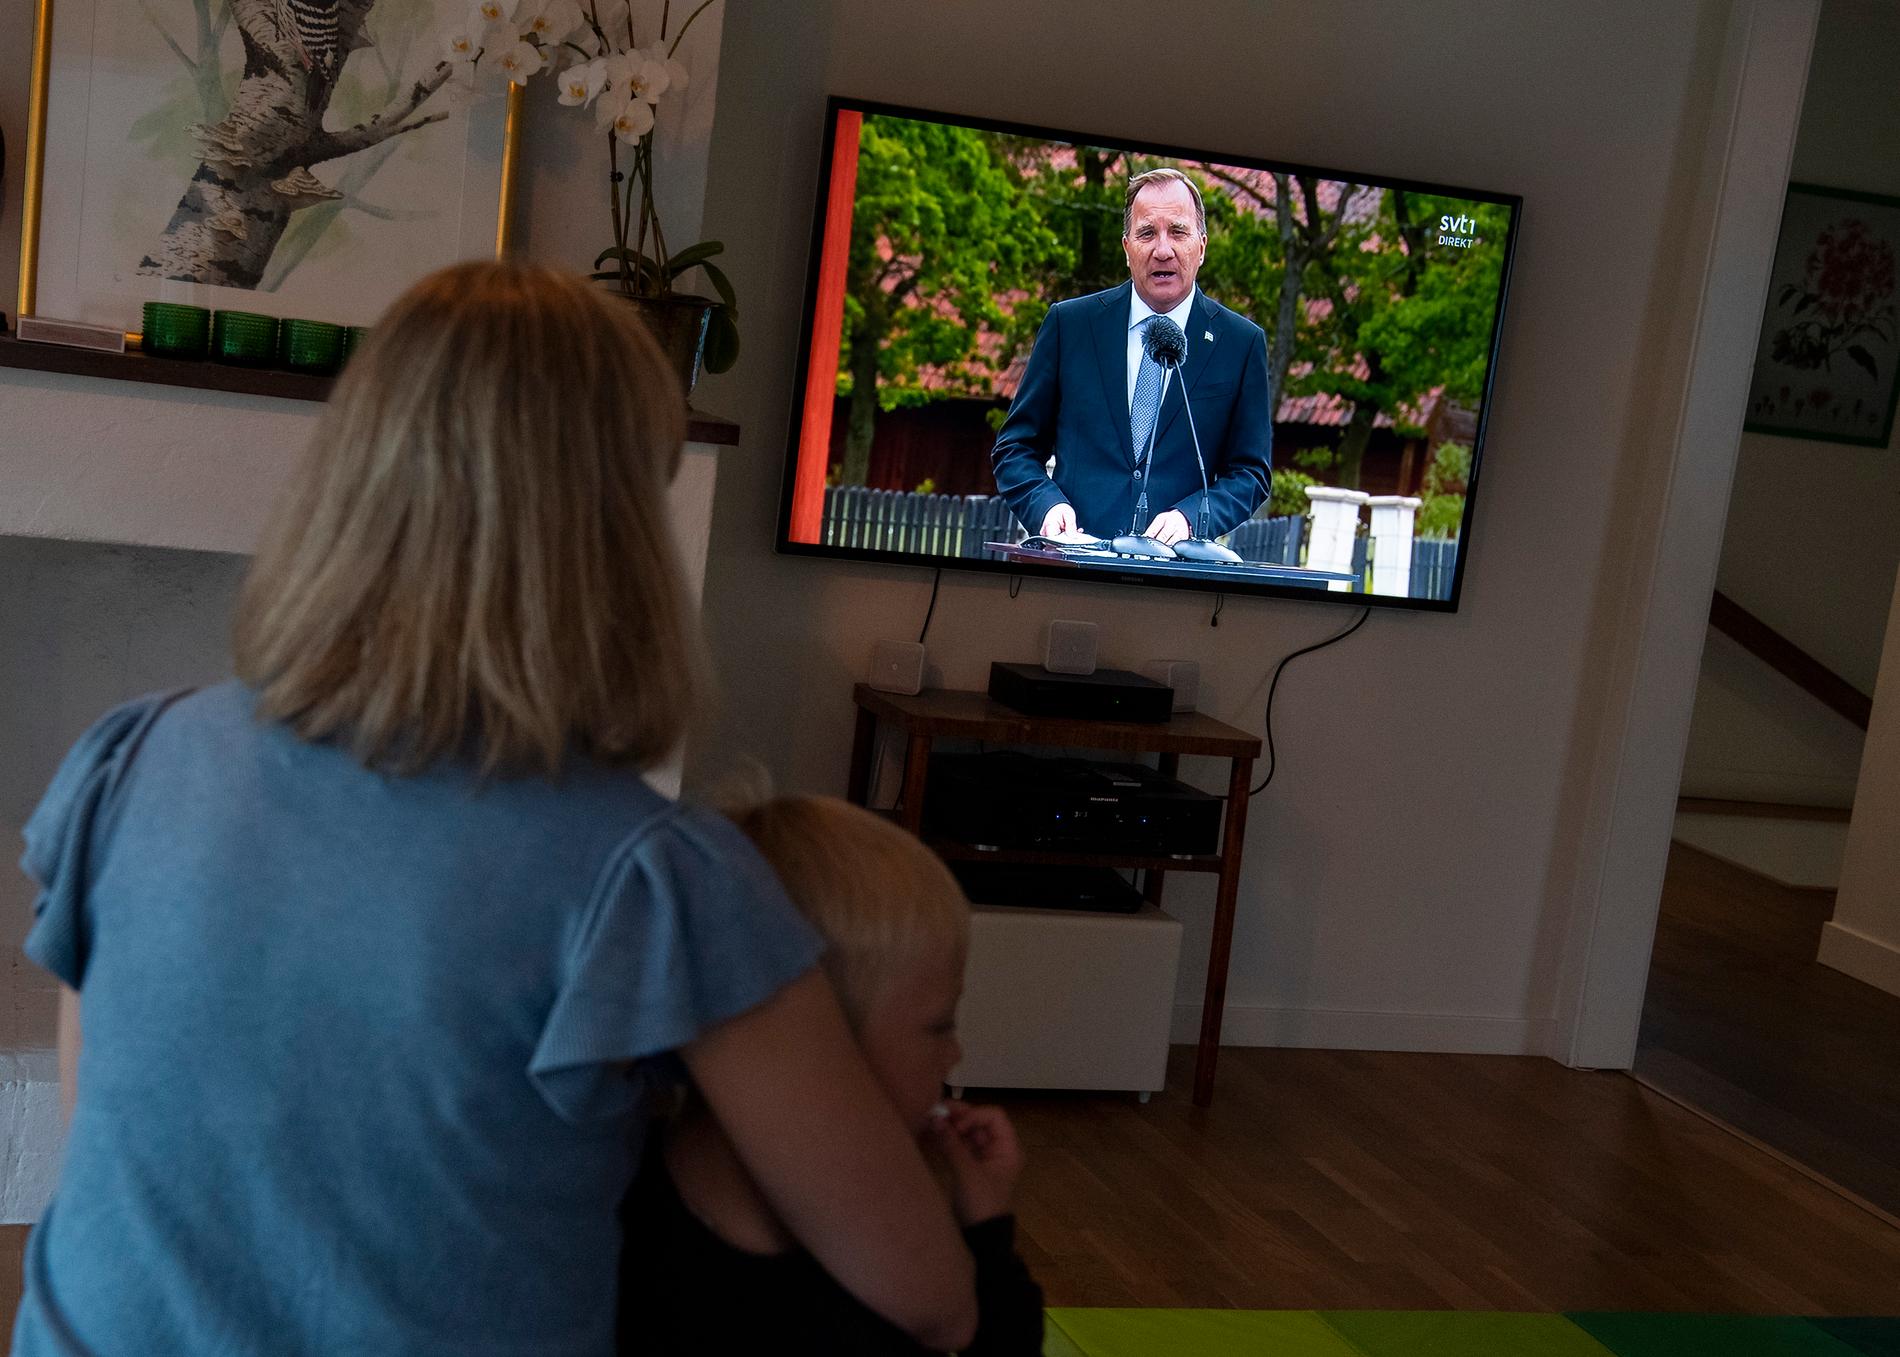 En familj tittar på Skansens tv-sända nationaldagsfirande med tal av statsminister Stefan Löfven (S).